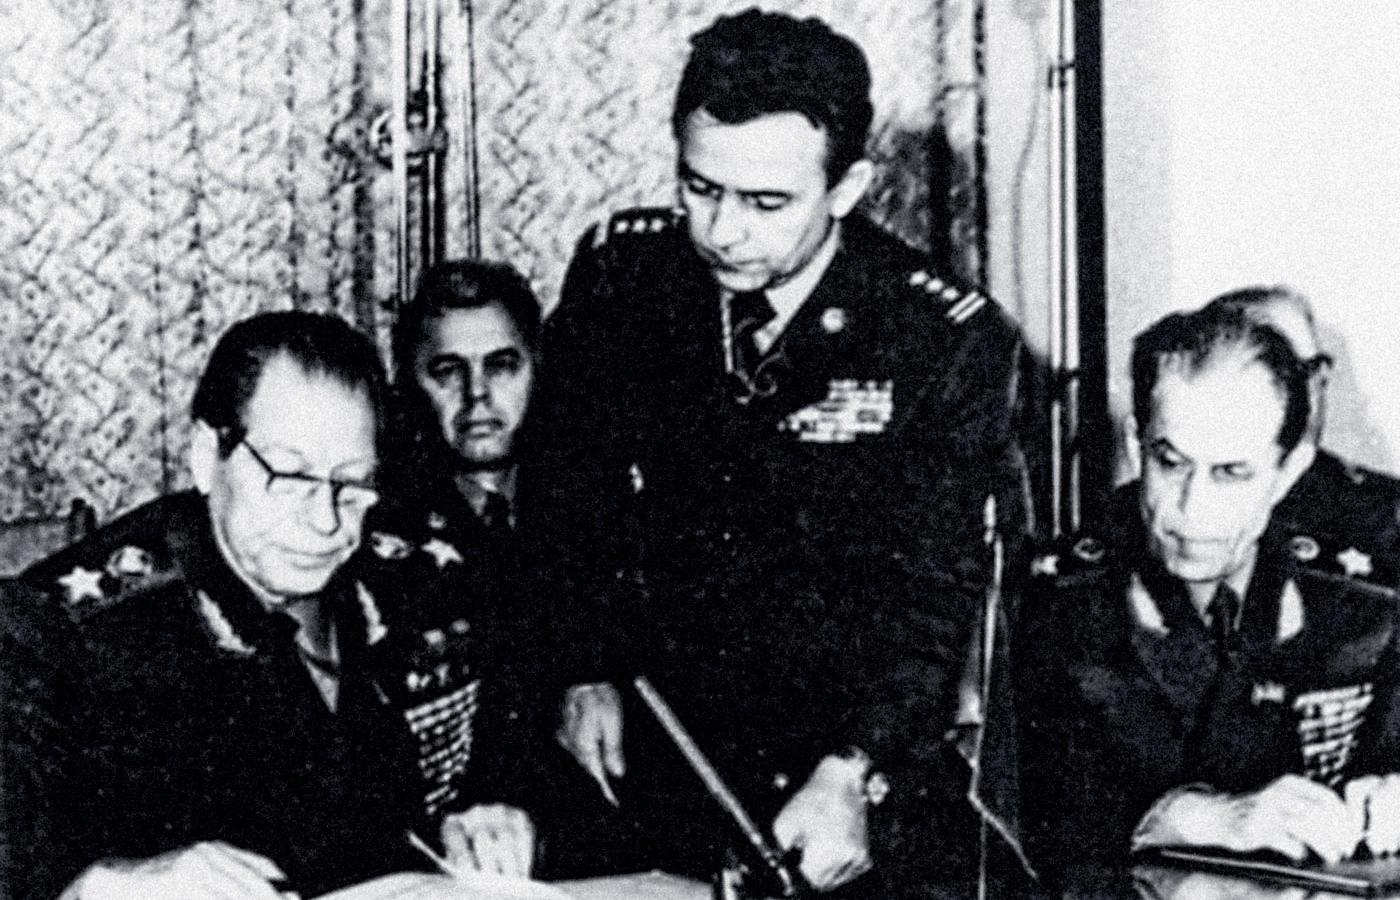 Płk Ryszard Kukliński (stoi) z marszałkiem Dmitrijem Ustinowem, ministrem obrony ZSRR (po lewej), Warszawa, grudzień 1979 r.